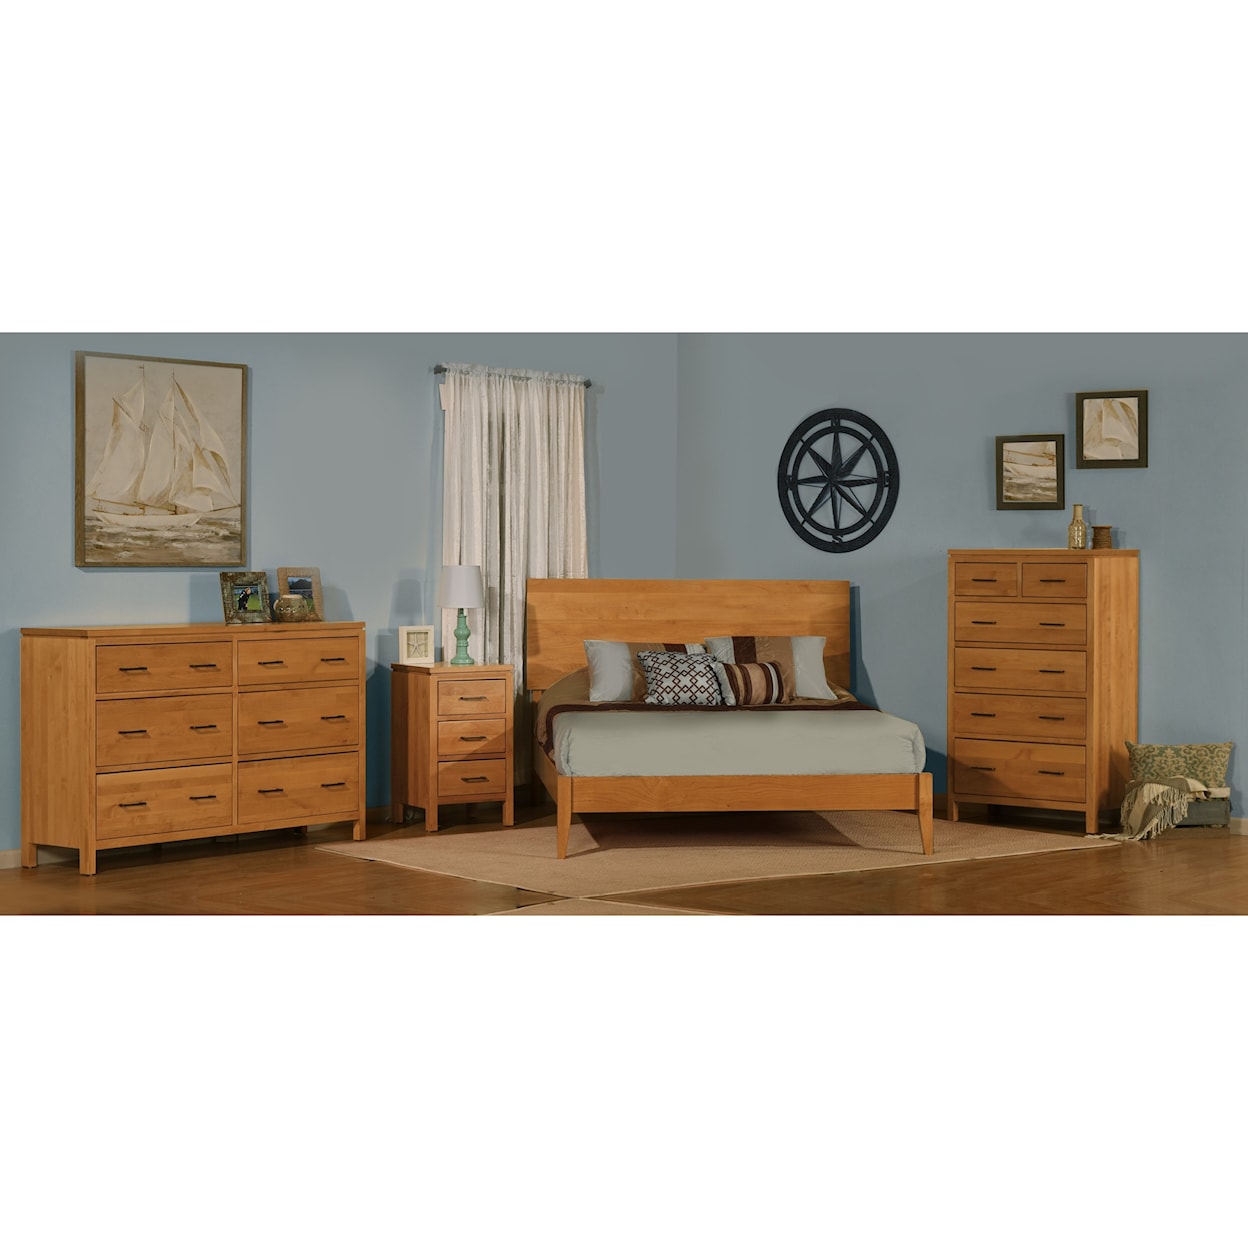 Archbold Furniture 2 West King Bedroom Group